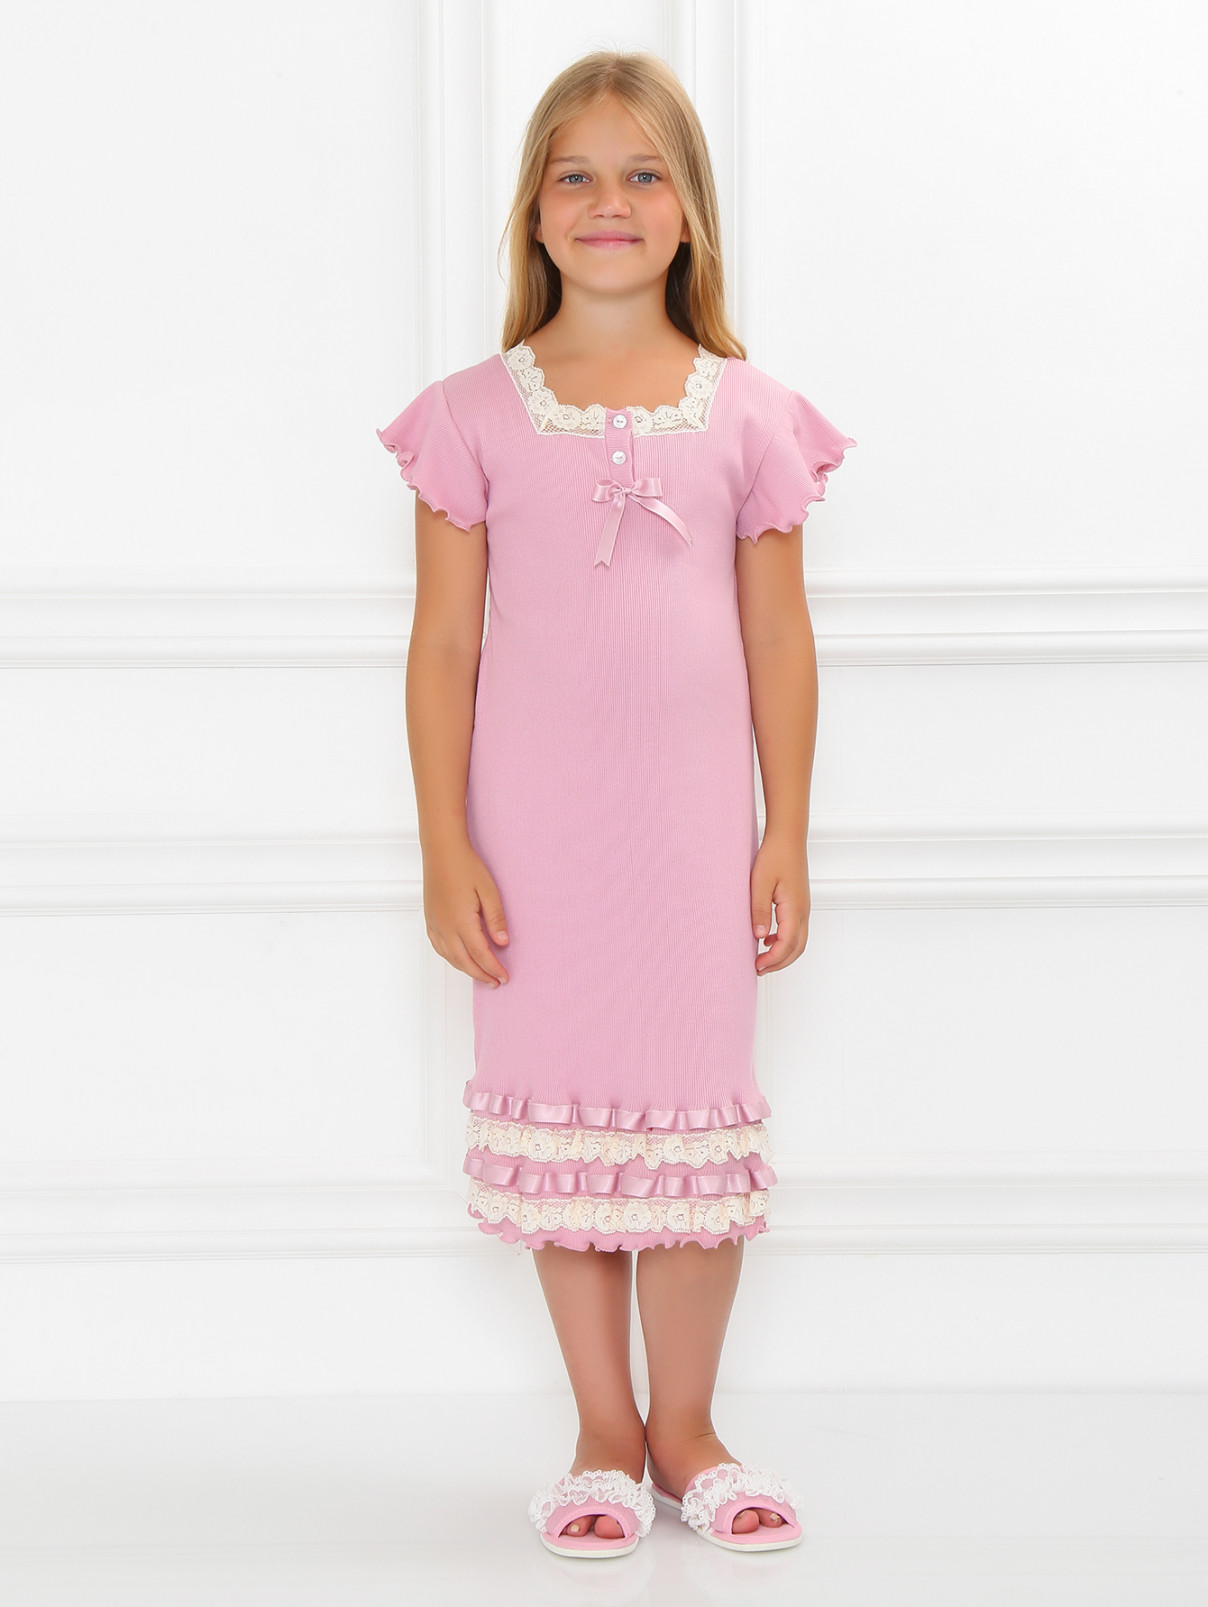 Сорочка из хлопка декорированная кружевом и атласными лентами Giottino  –  Модель Общий вид  – Цвет:  Розовый